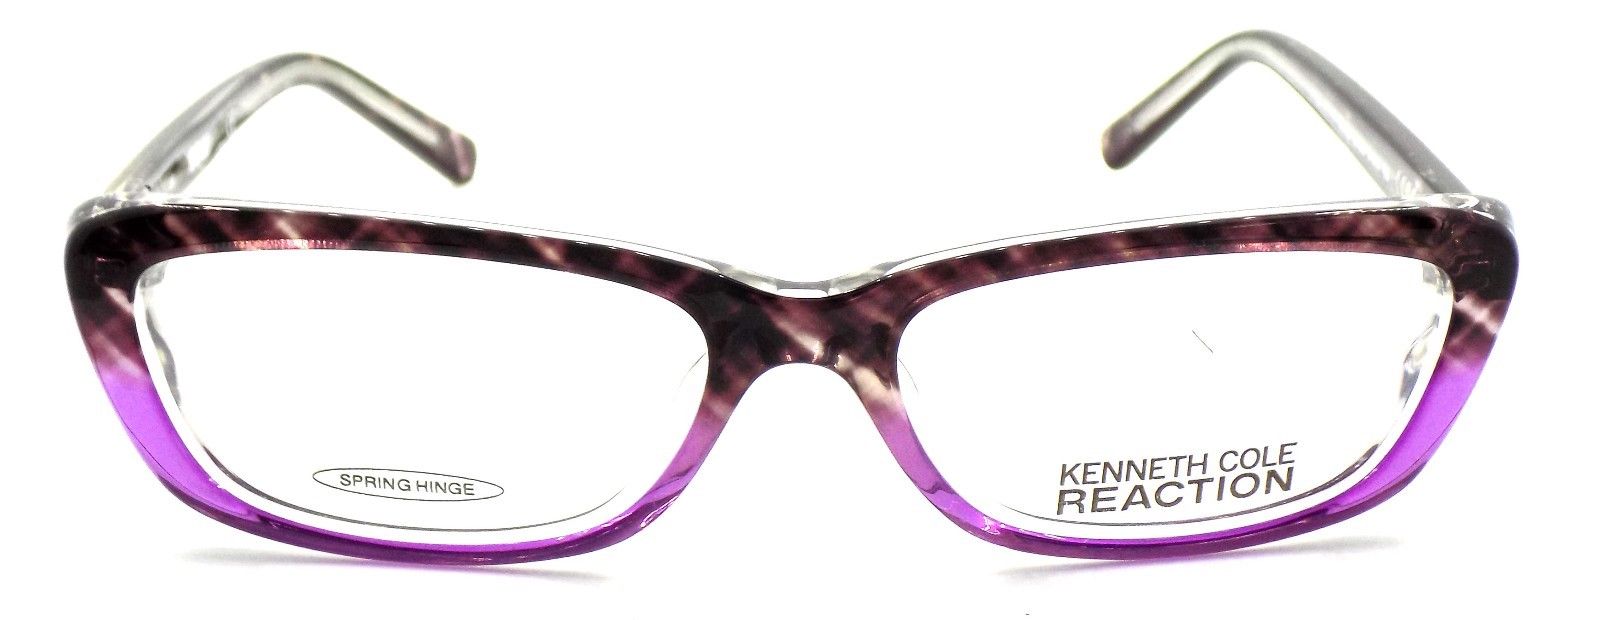 2-Kenneth Cole REACTION KC724 083 Women's Eyeglasses 51-14-135 Violet + CASE-726773172361-IKSpecs